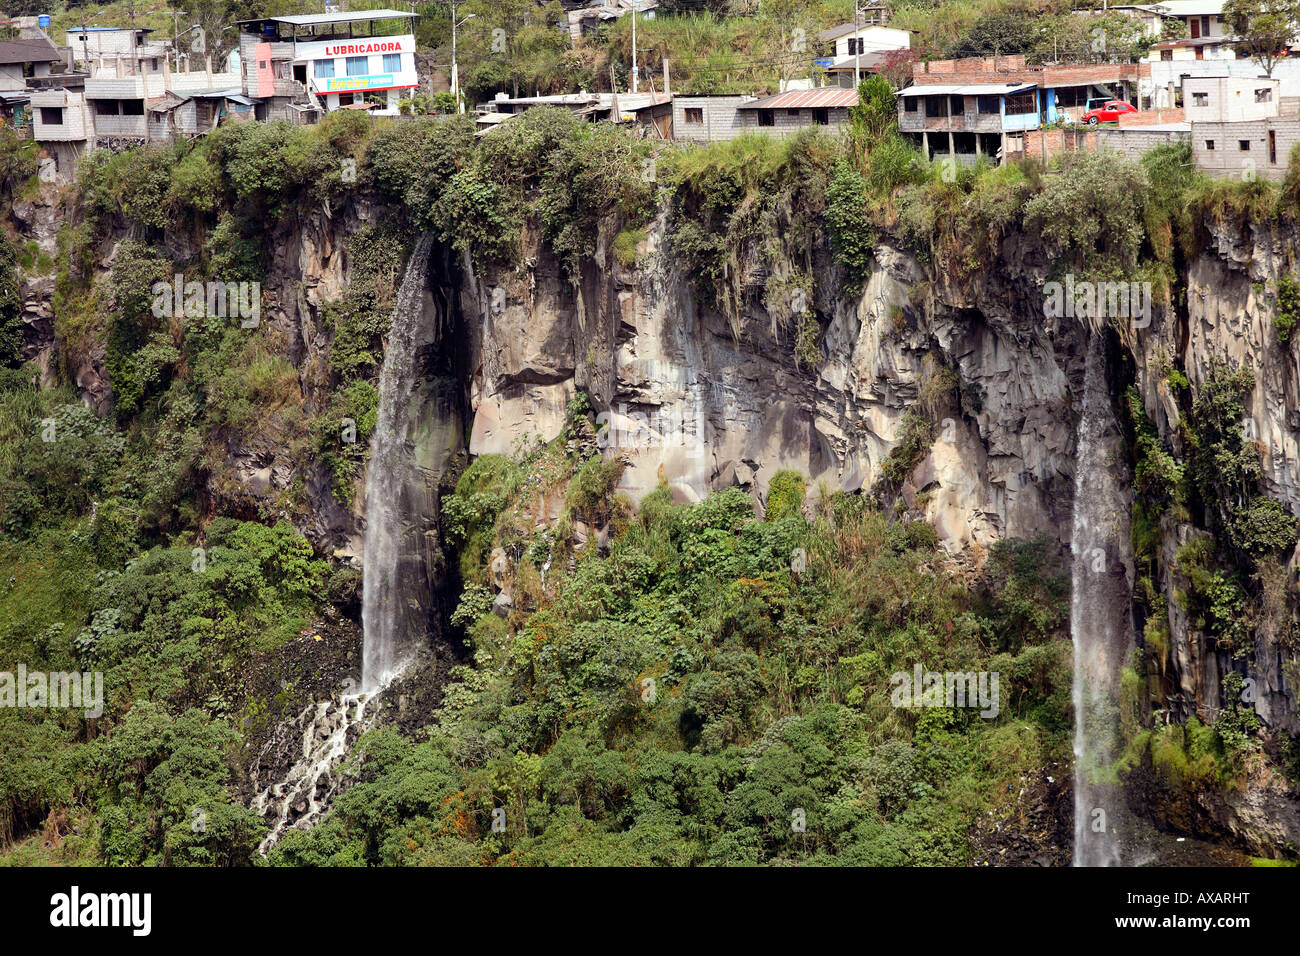 Edifici appollaiato sul bordo di una scogliera di basalto, parte della città di Banos, Ecuador Foto Stock